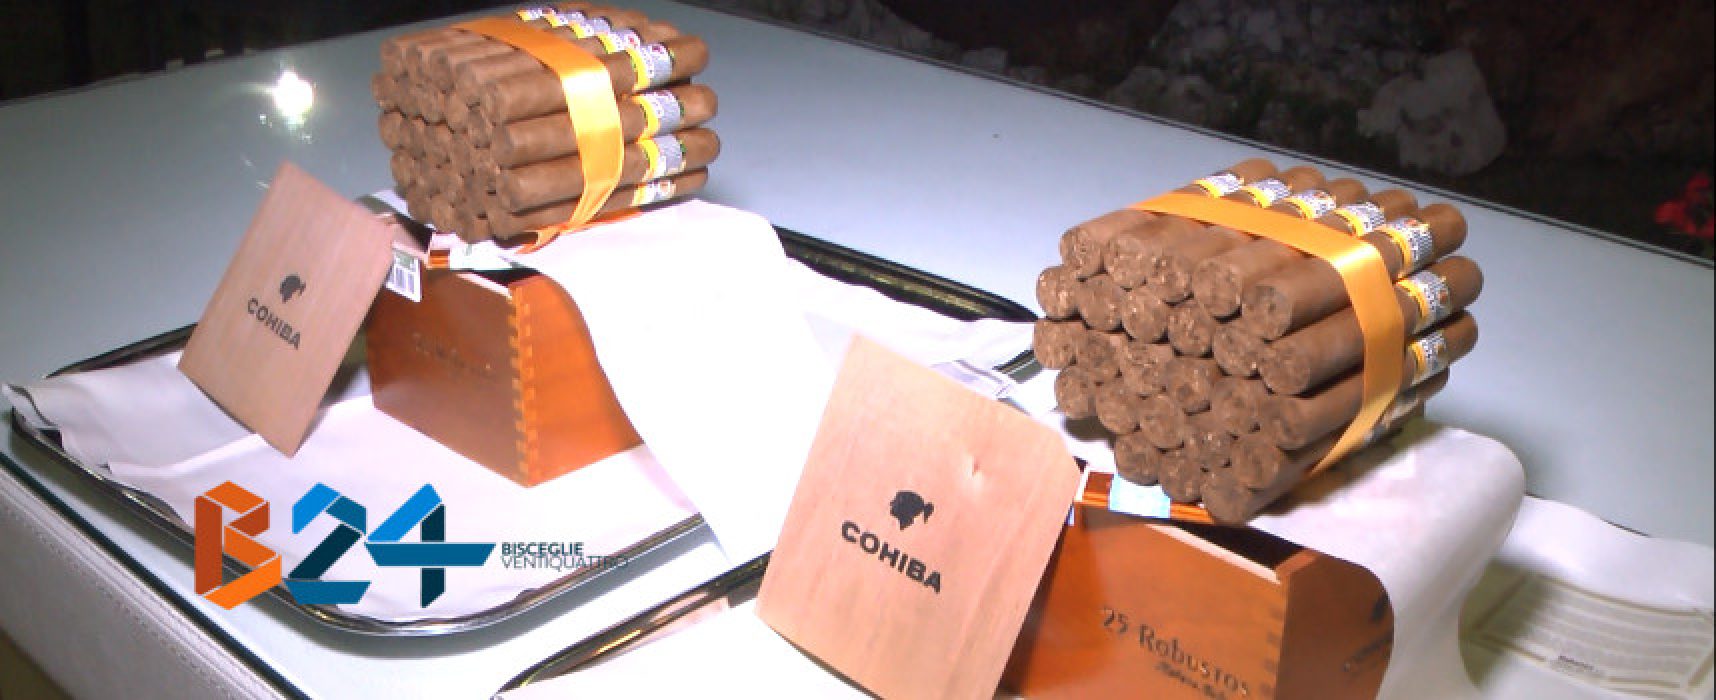 Nasce il Sevillas Cigar Club per diffondere la cultura del sigaro e del “fumo lento” / VIDEO